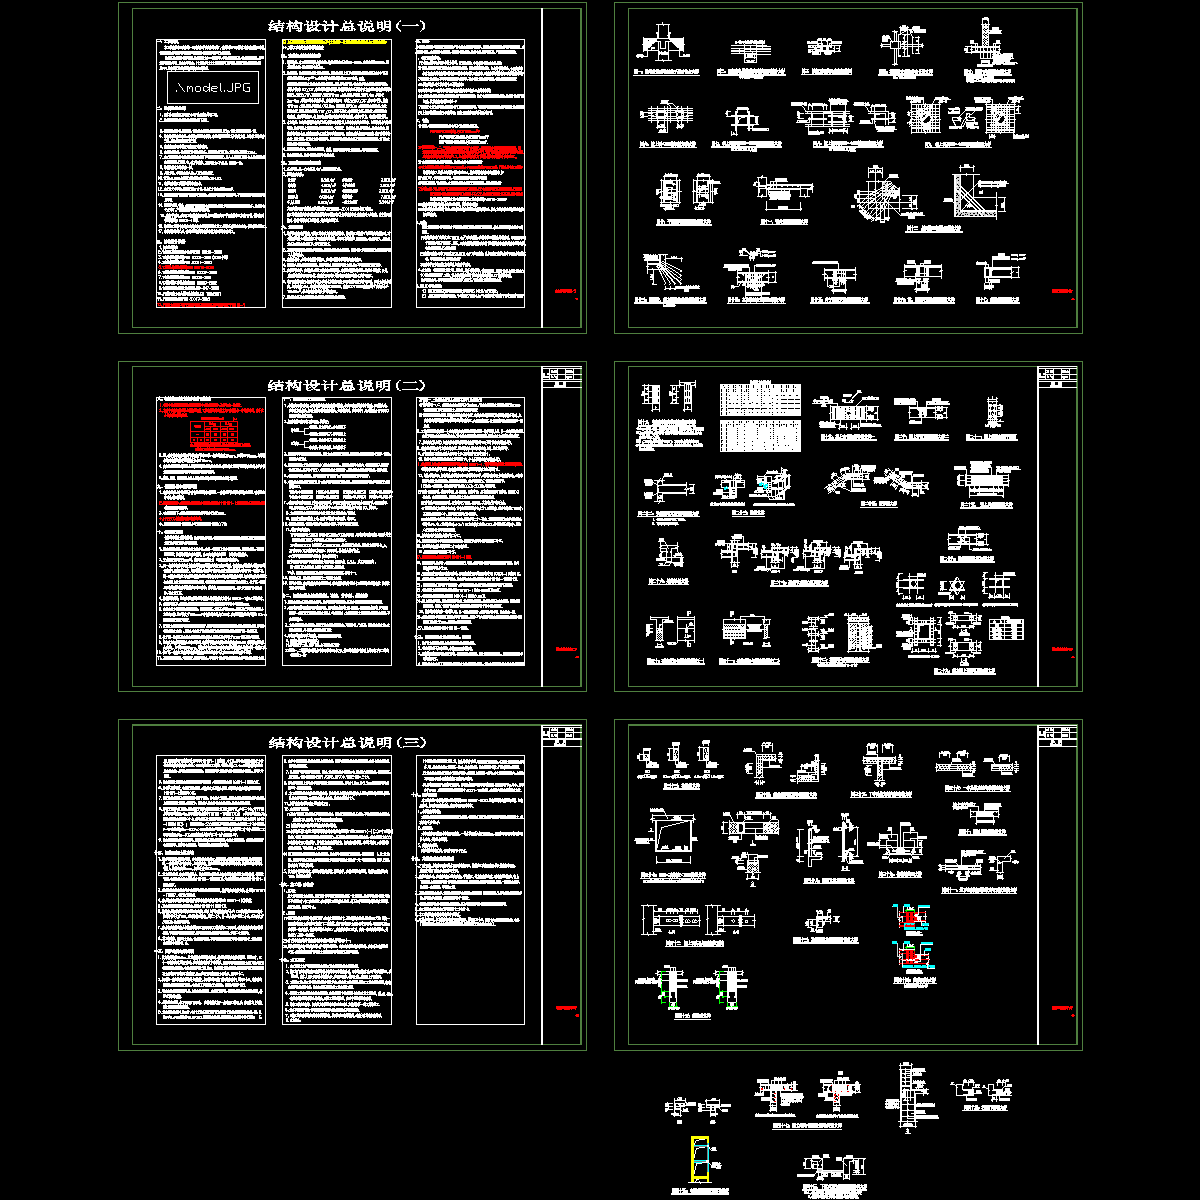 美术馆-20120222电子版招标图-结构设计总说明.dwg